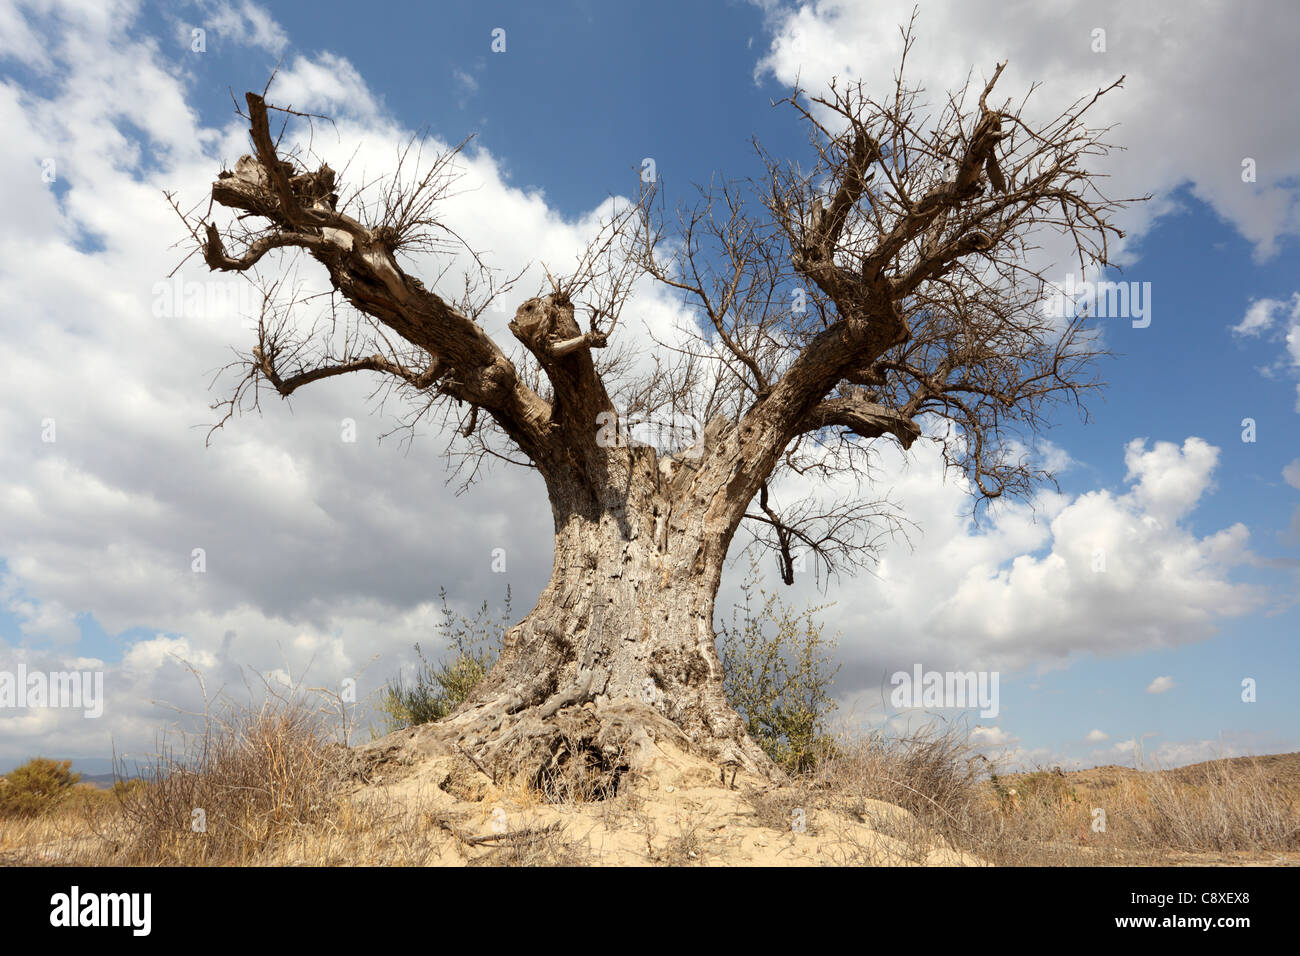 Dead tree in the desert Stock Photo